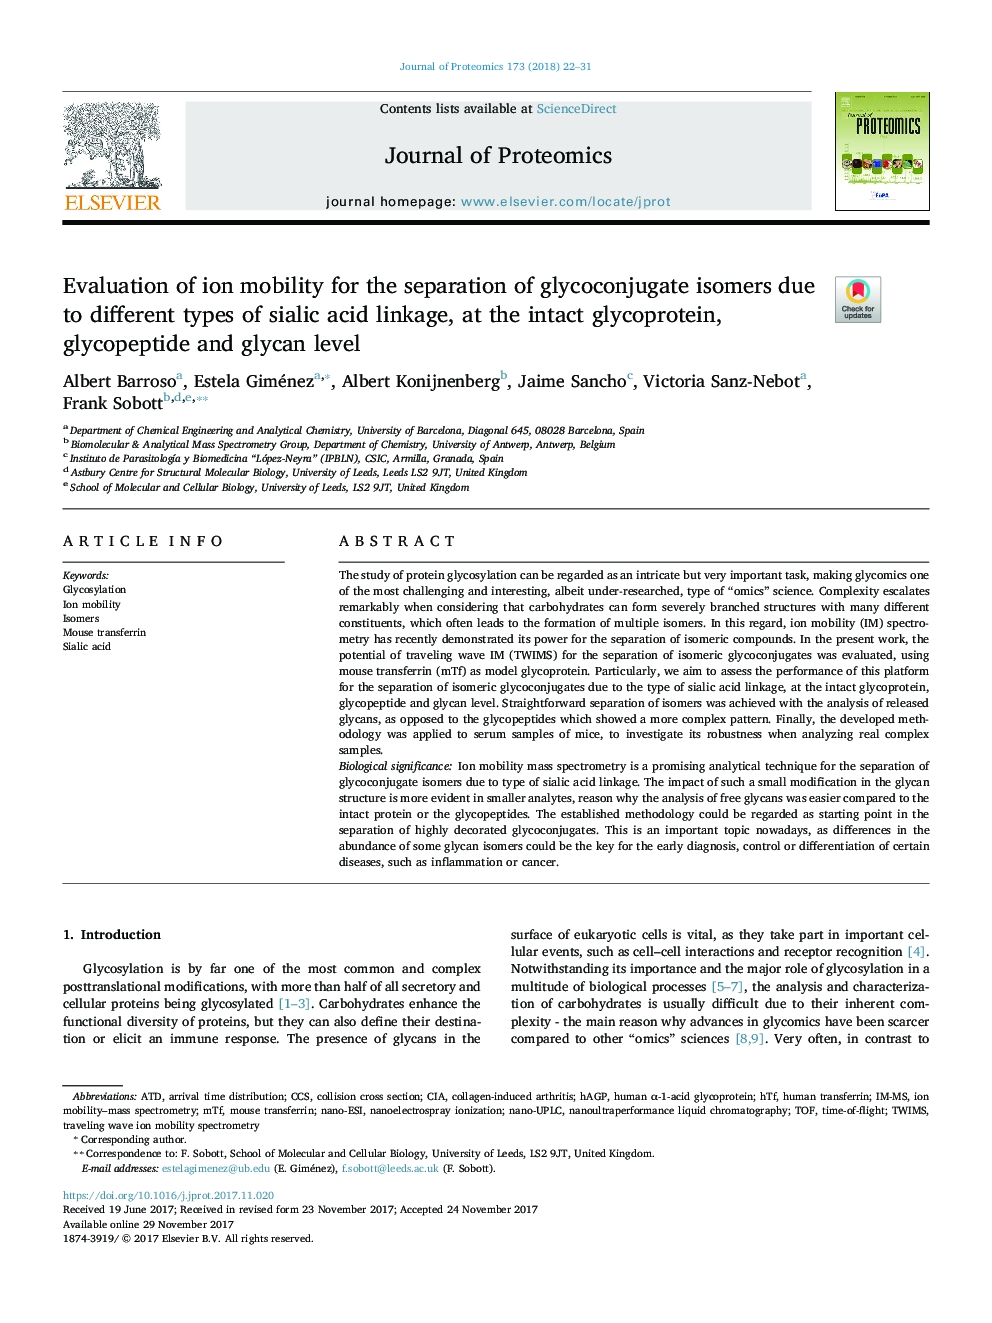 بررسی جابجایی یون ها برای جداسازی ایزومرهای گلیکوکونژوگات به علت انواع مختلف پیوند اسید سیلک در سطوح گلیکوپروتئین، سطح گلیکوپپتید و گلیکان 